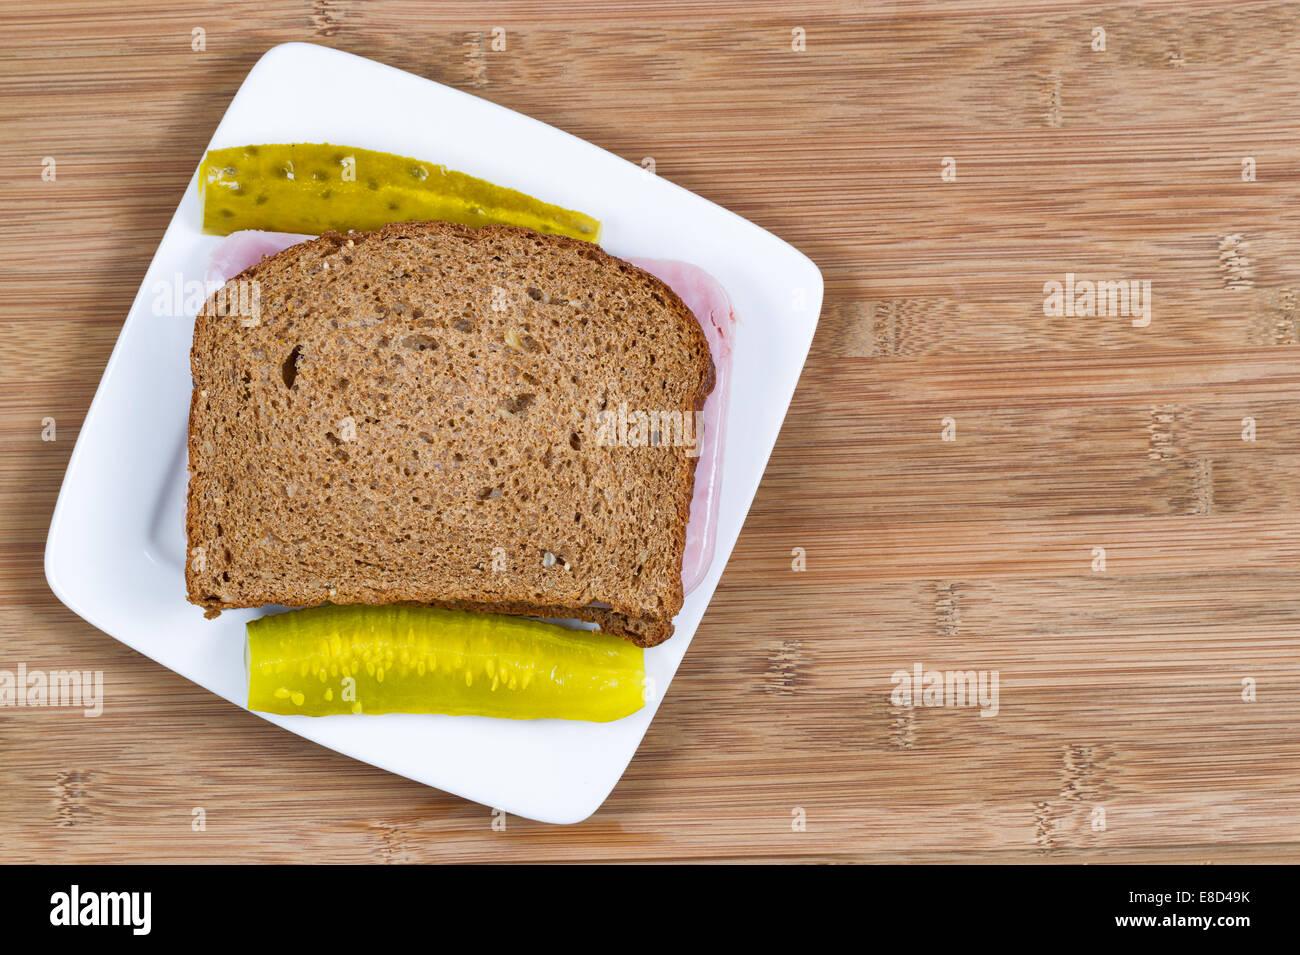 Vue du dessus de l'horizontale Gros plan Ham sandwich fait de pain de blé entier et des cornichons sur le côté avec plaque blanche et bois Banque D'Images